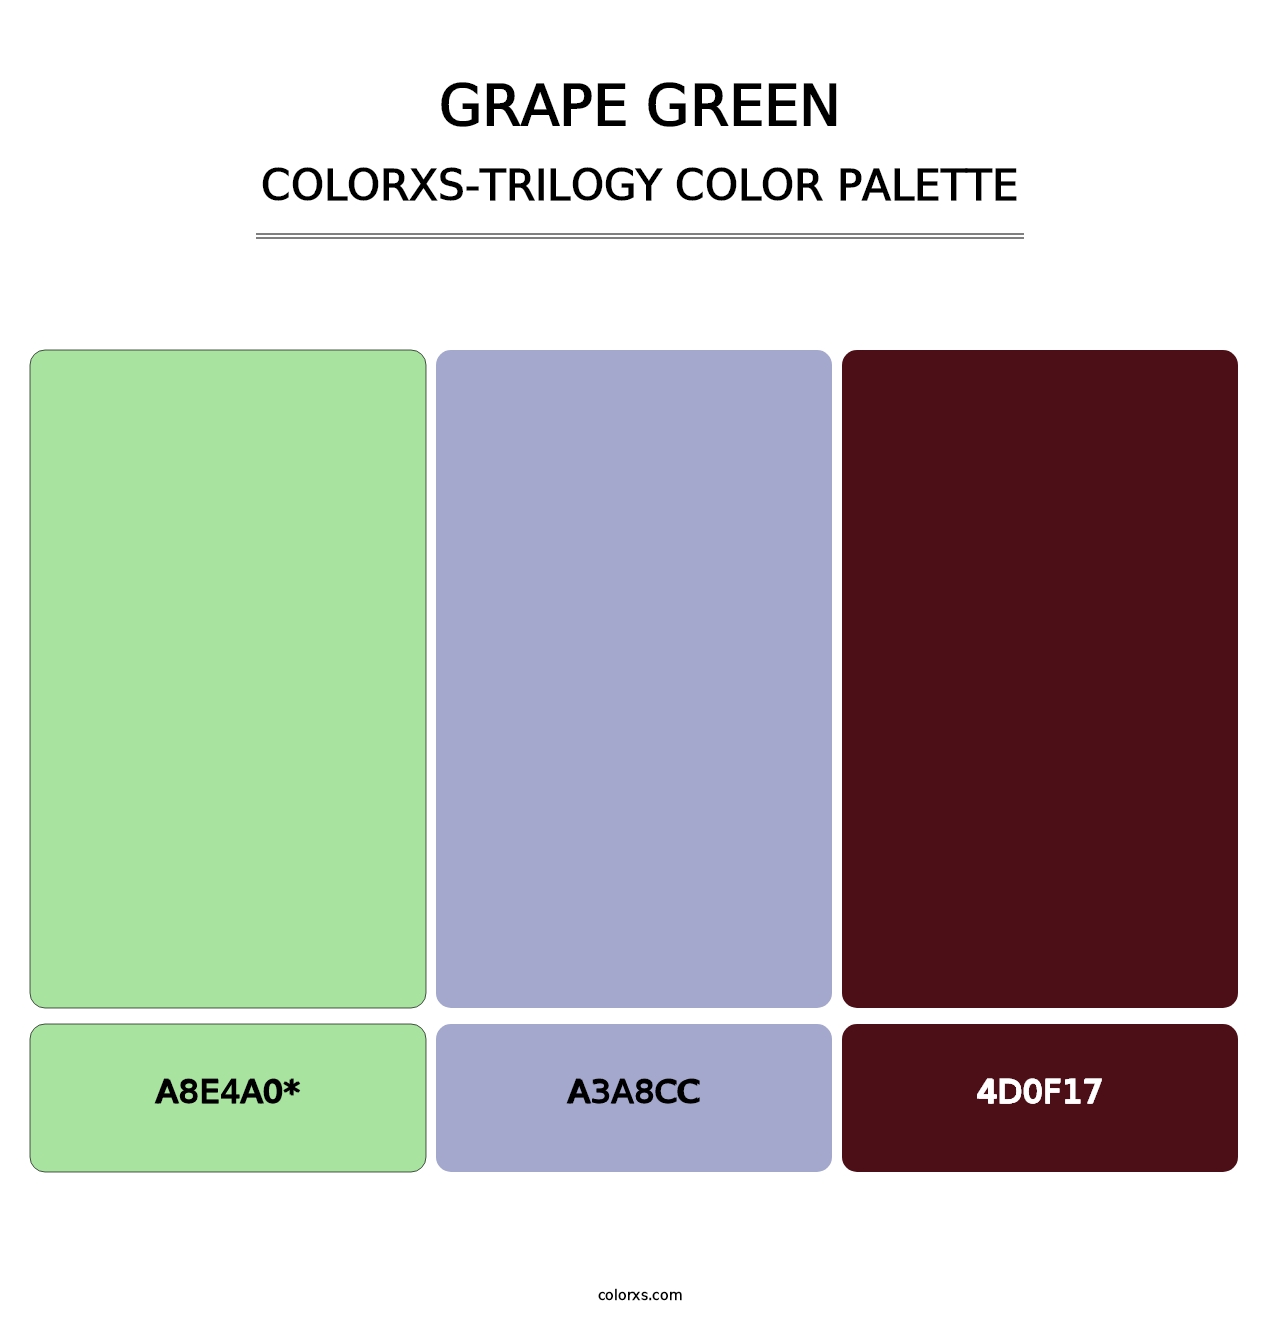 Grape Green - Colorxs Trilogy Palette